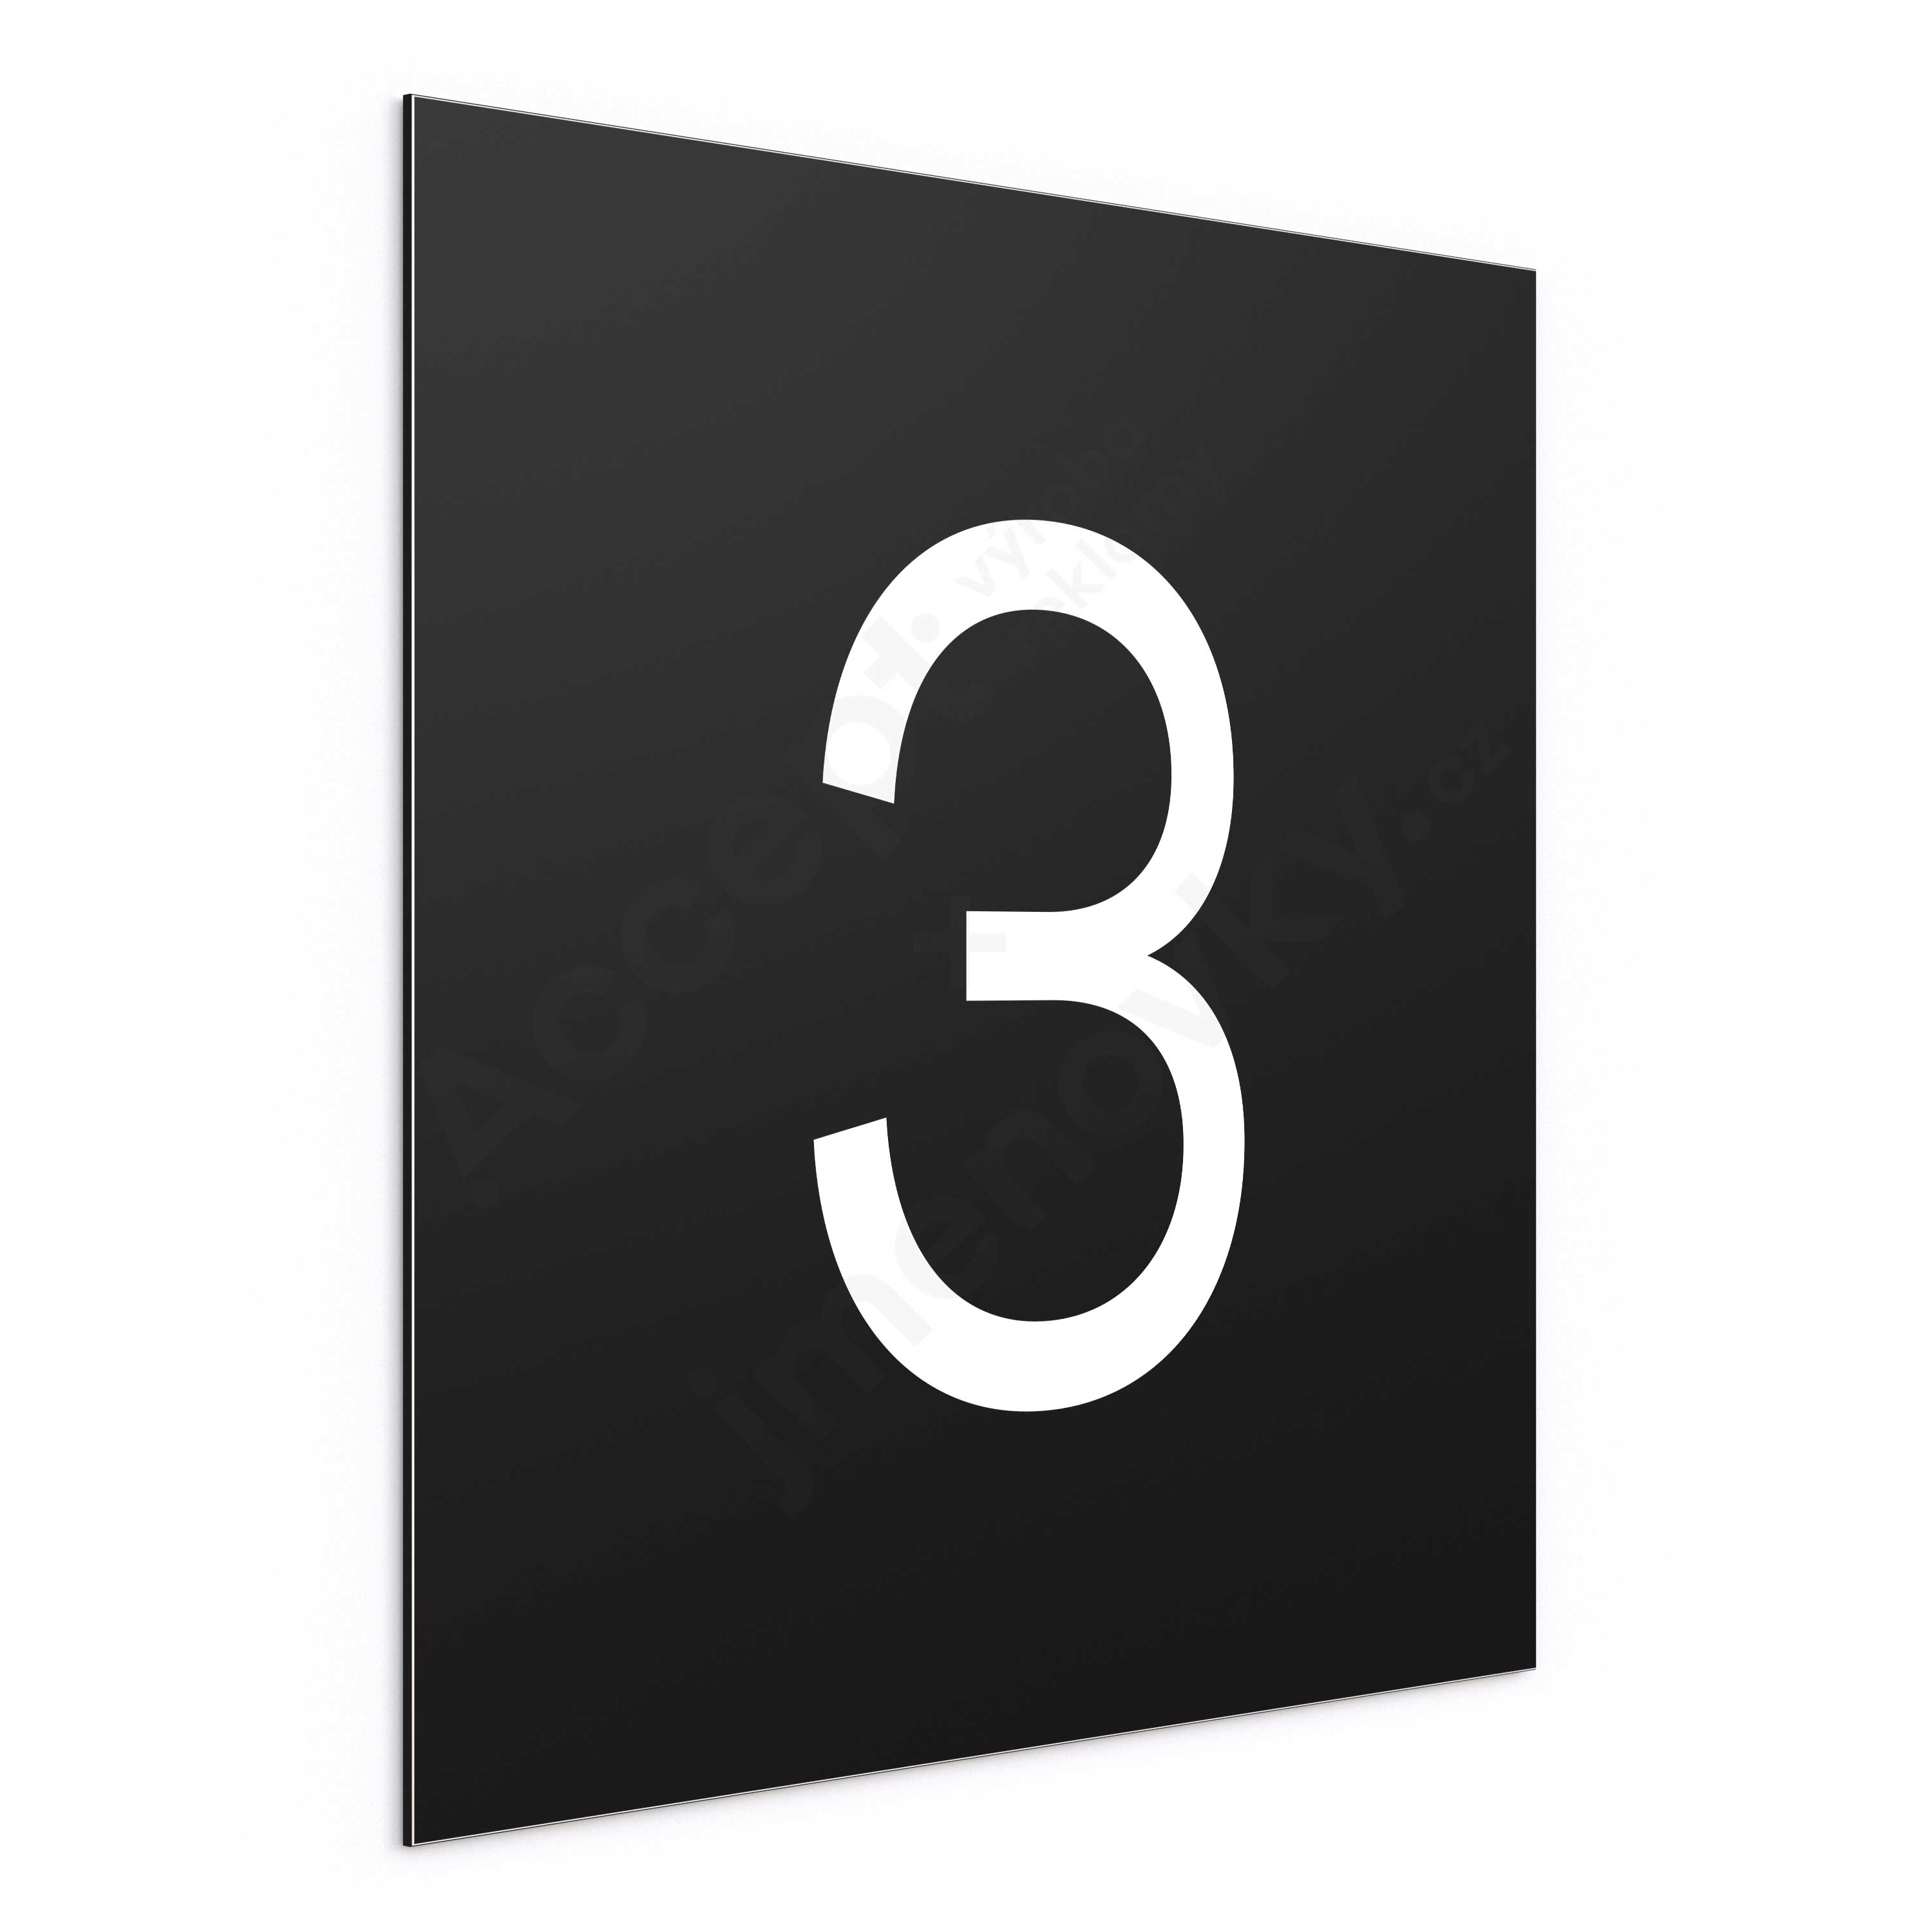 Označení podlaží - číslo "3" - černá tabulka - bílý popis